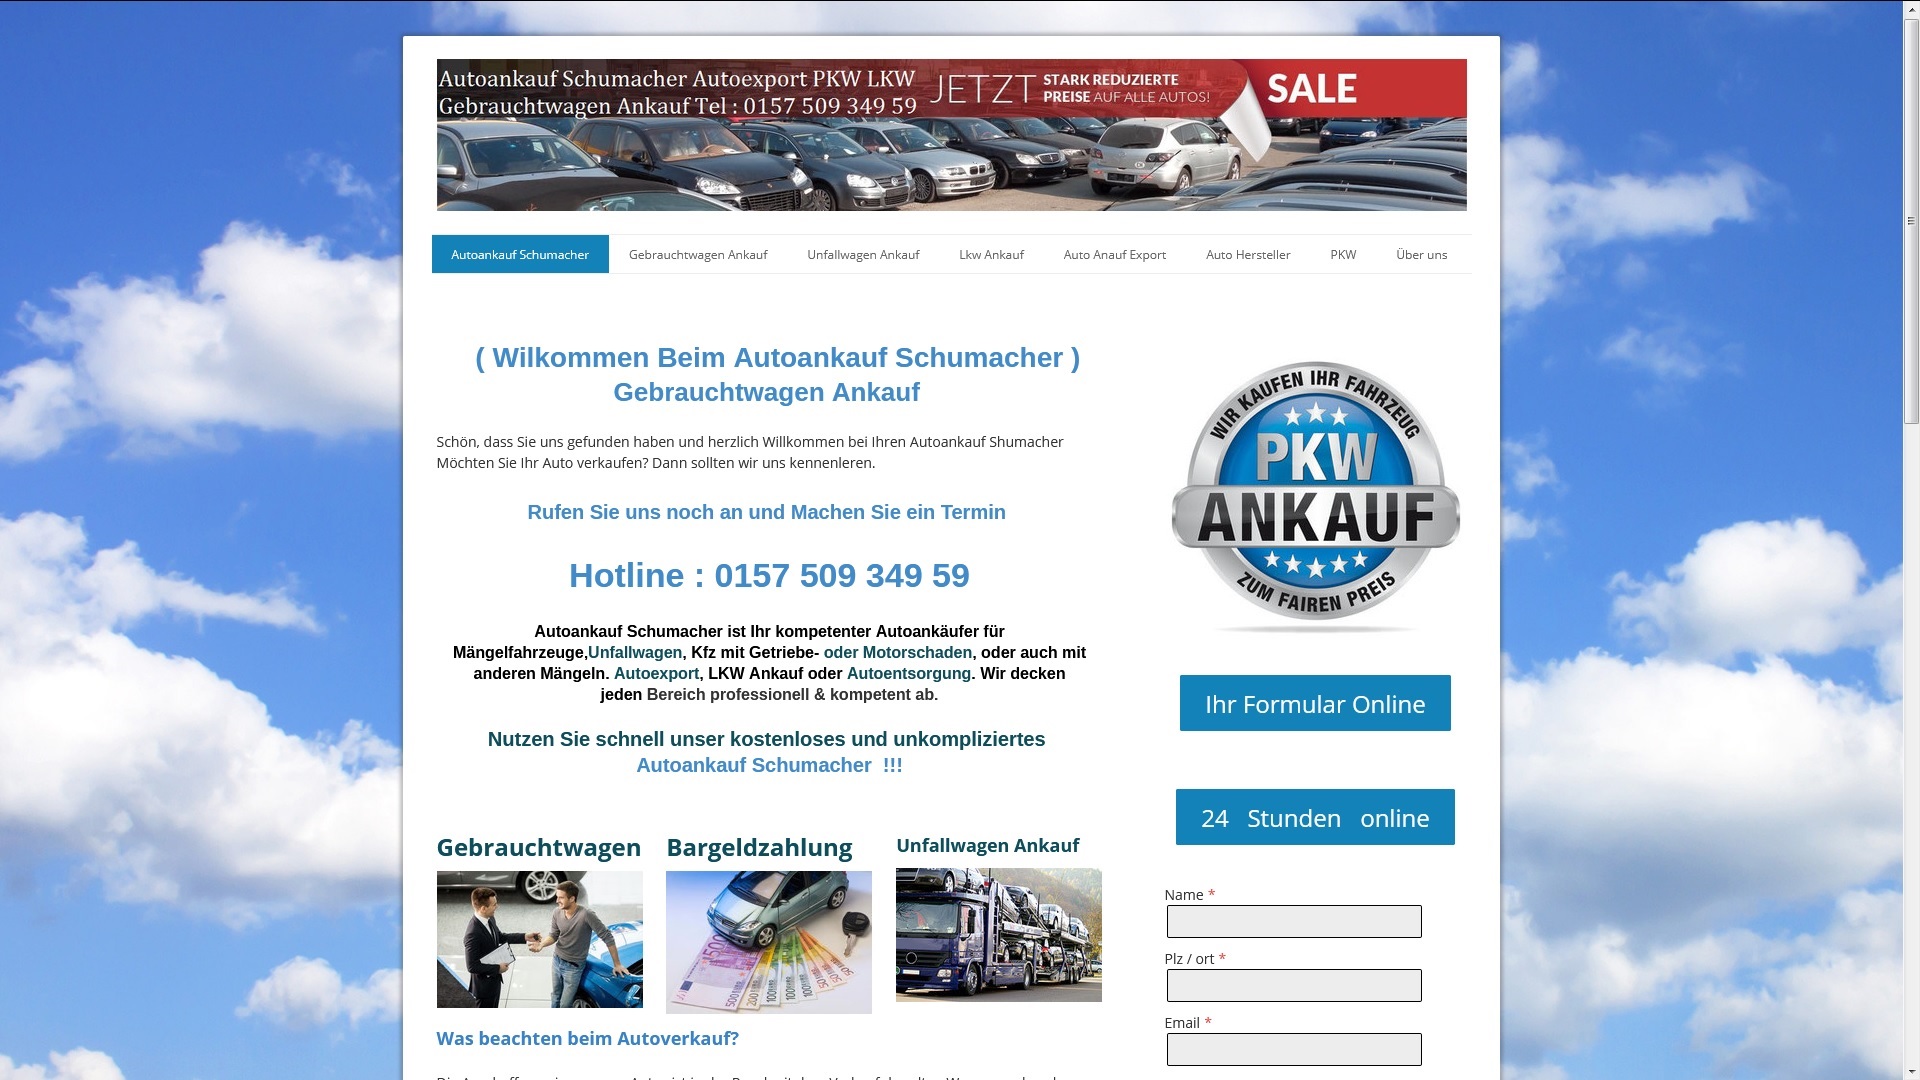 Autoankauf Neustadt an der Weinstraße kauf Mängelfahrzeuge für den Export an